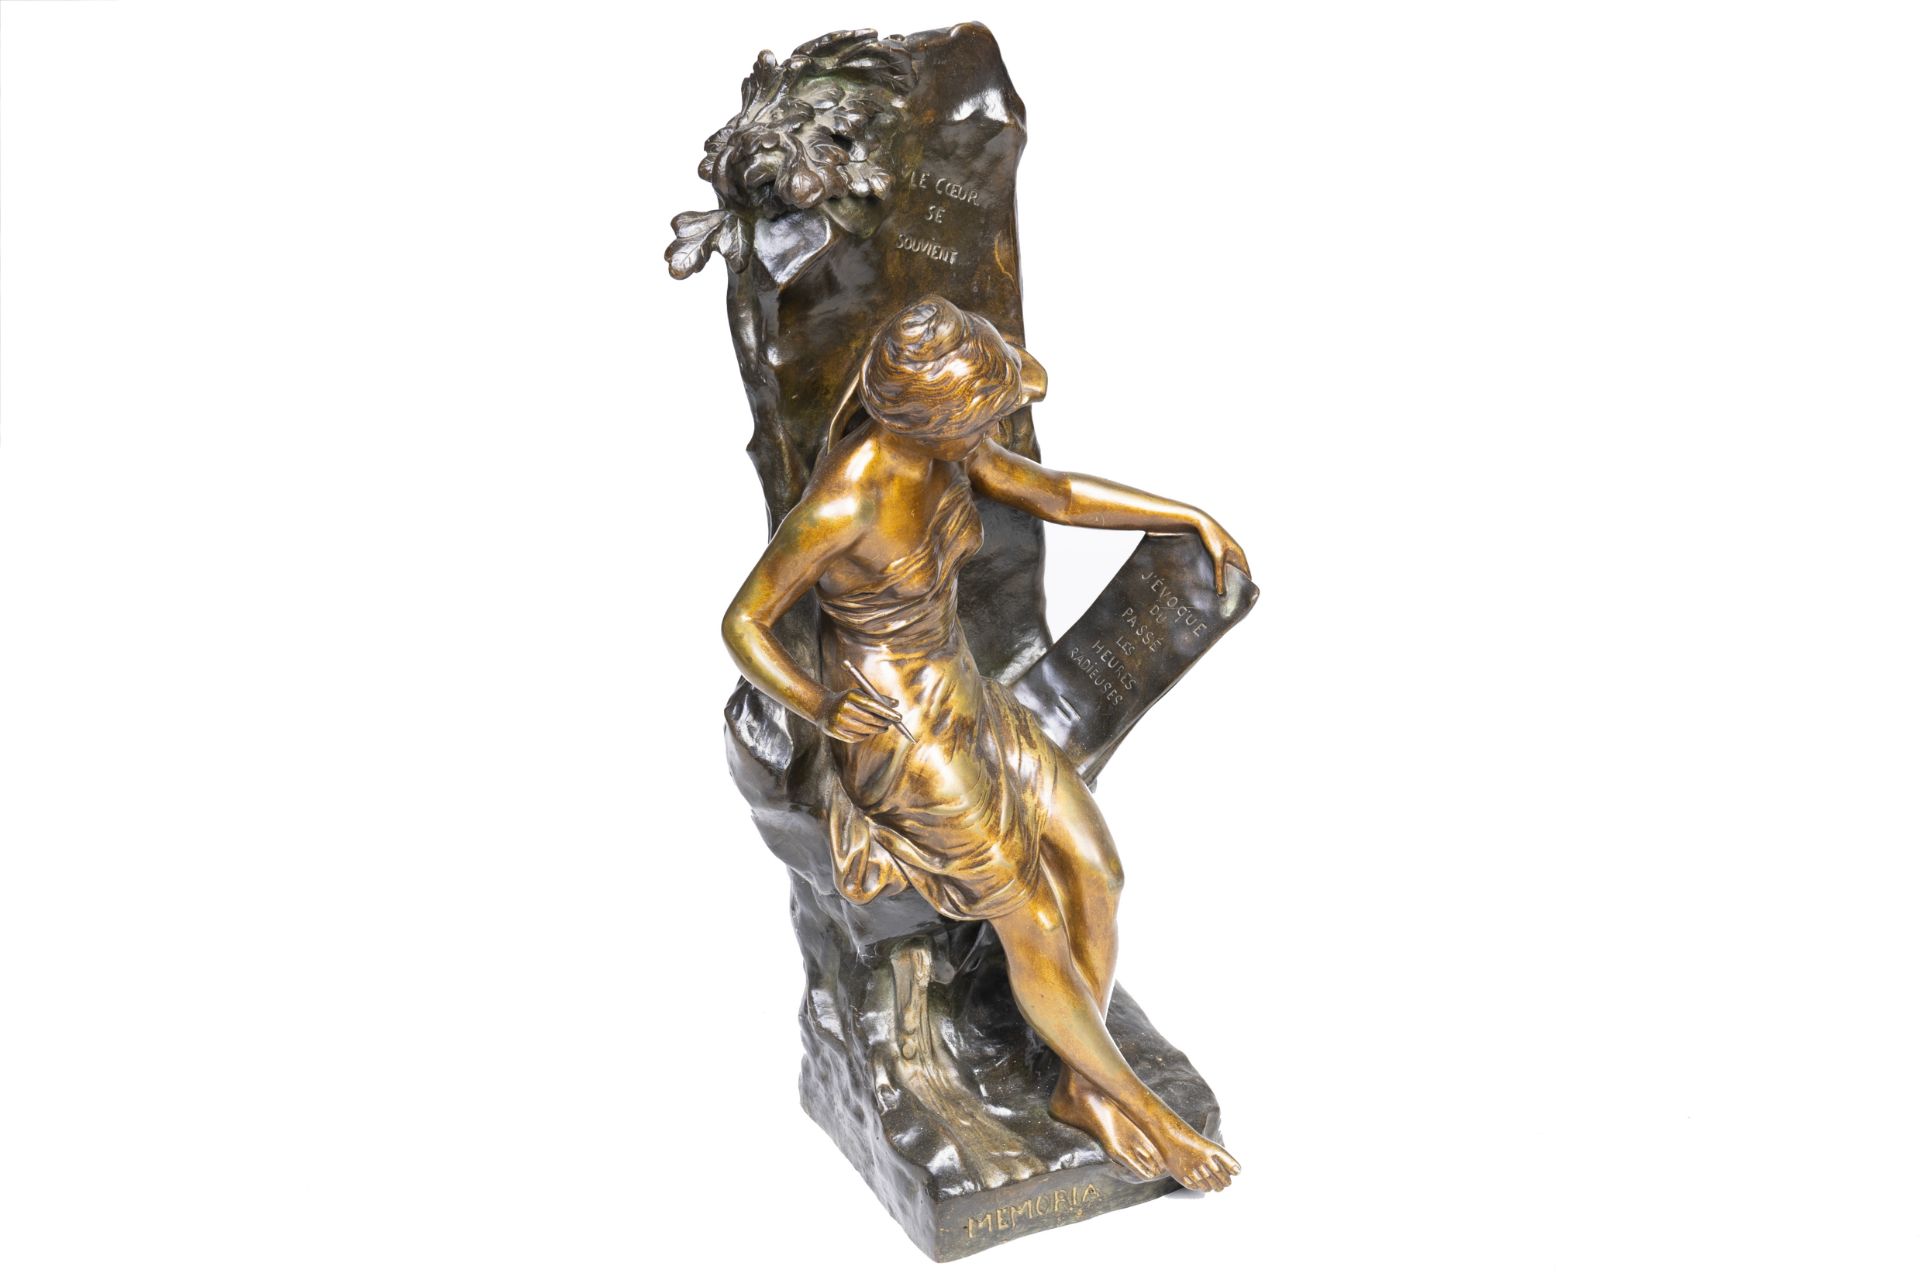 Emile Picault (1833-1915): 'Memoria', patinated bronze